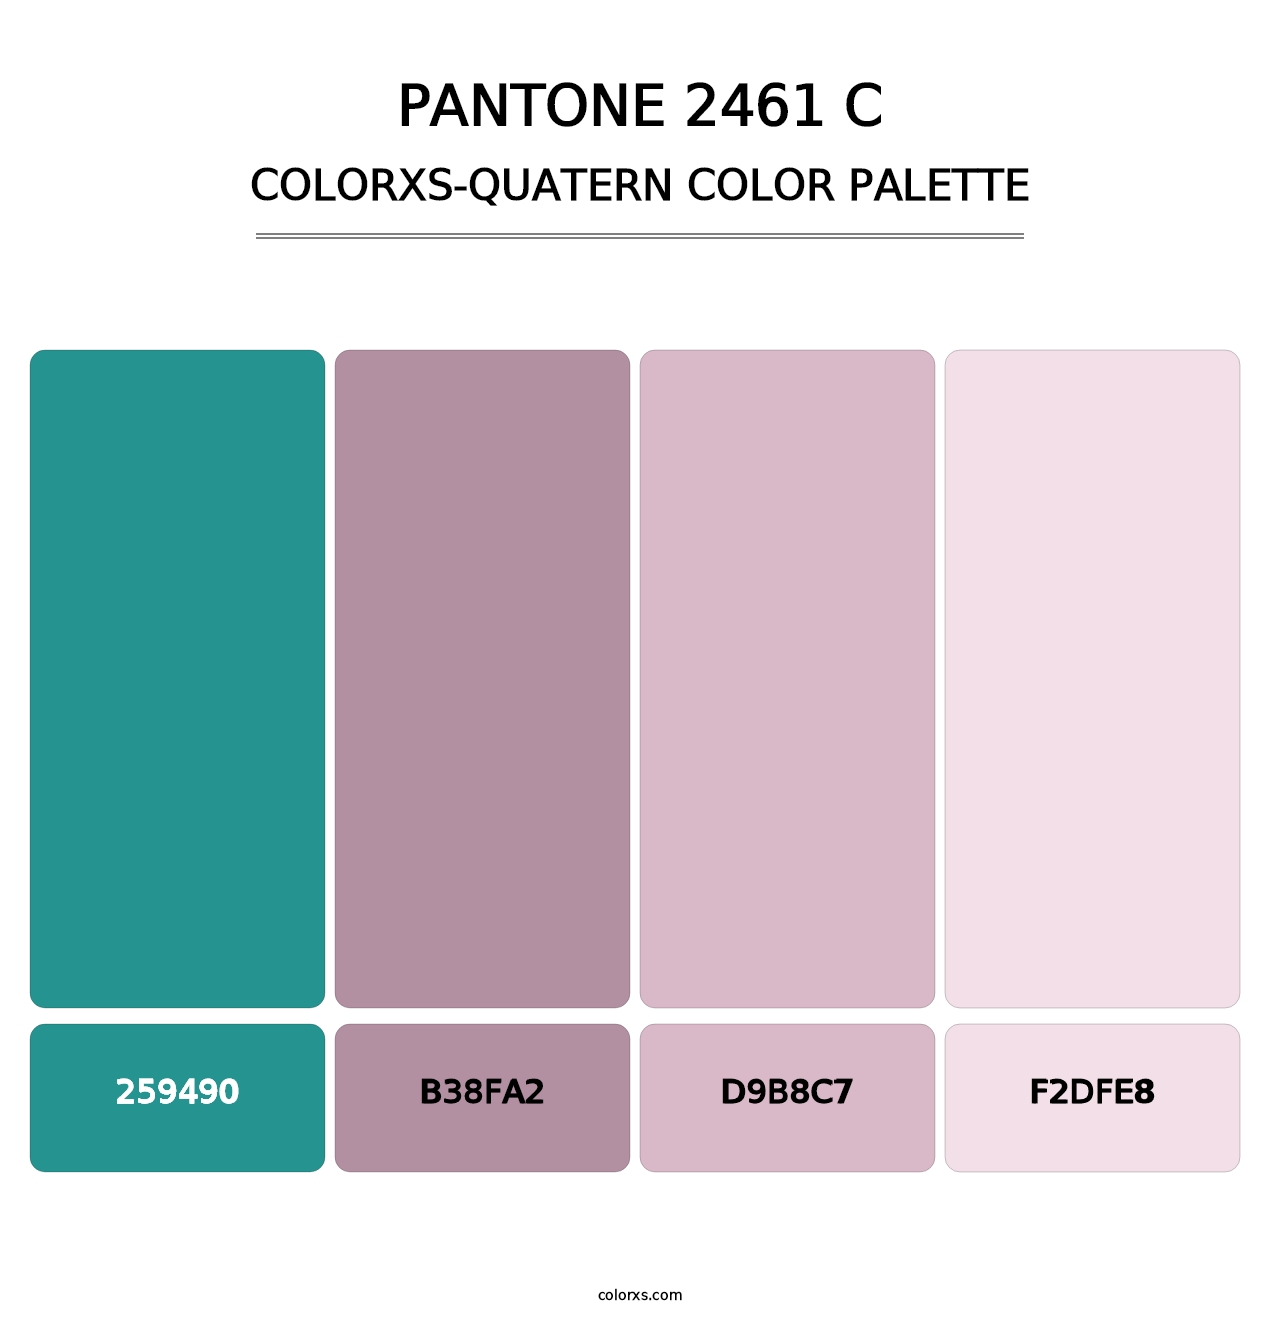 PANTONE 2461 C - Colorxs Quatern Palette